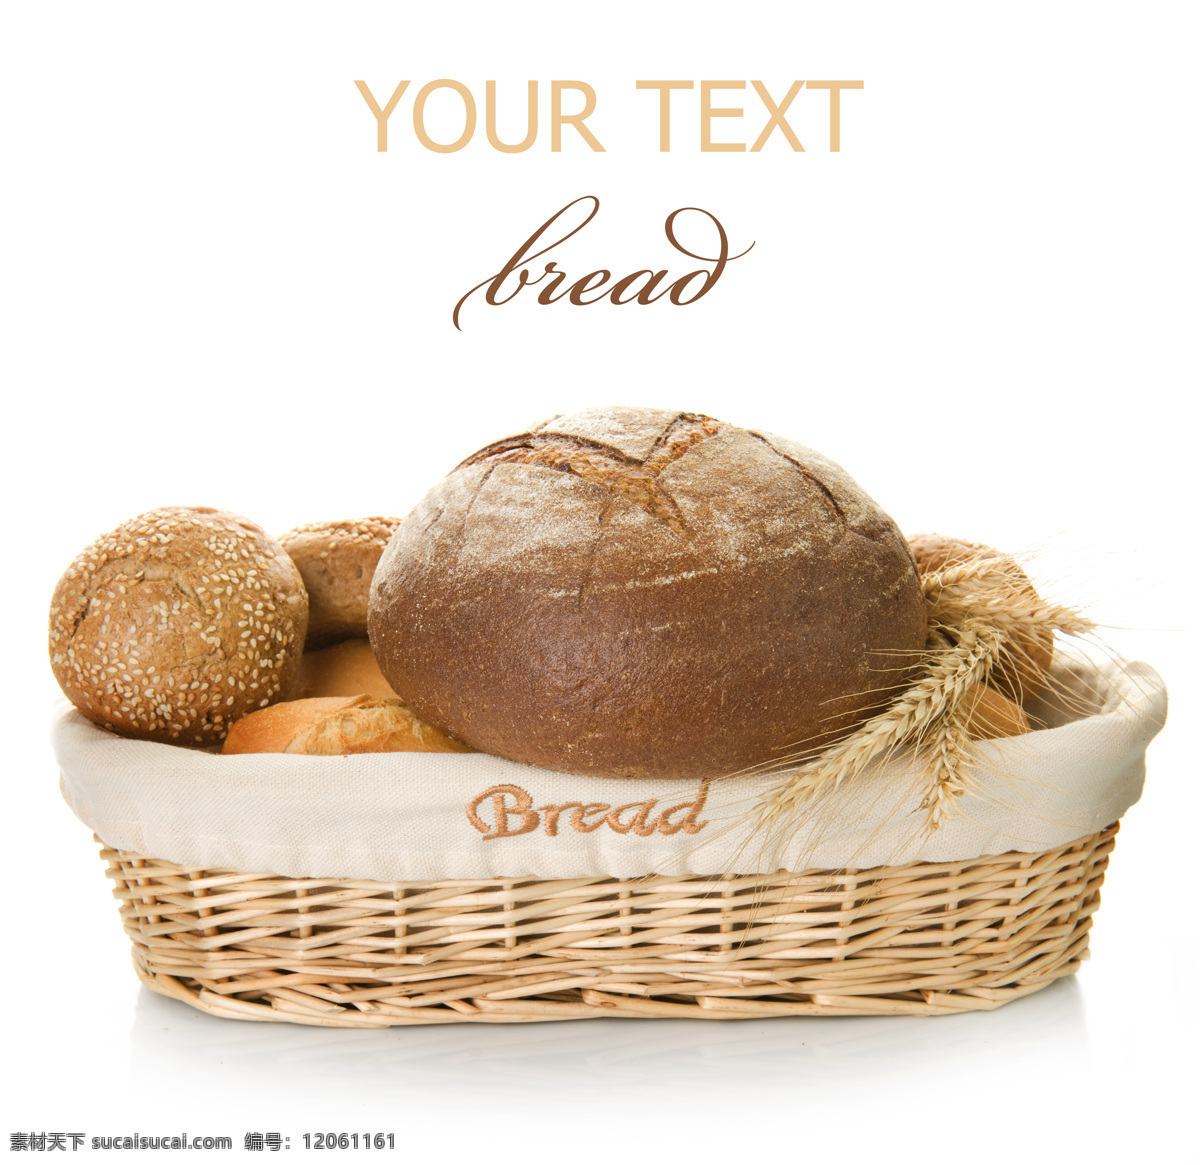 法式面包 欧式面包 糕点 点心 烤面包 300pi 餐饮美食 食物原料